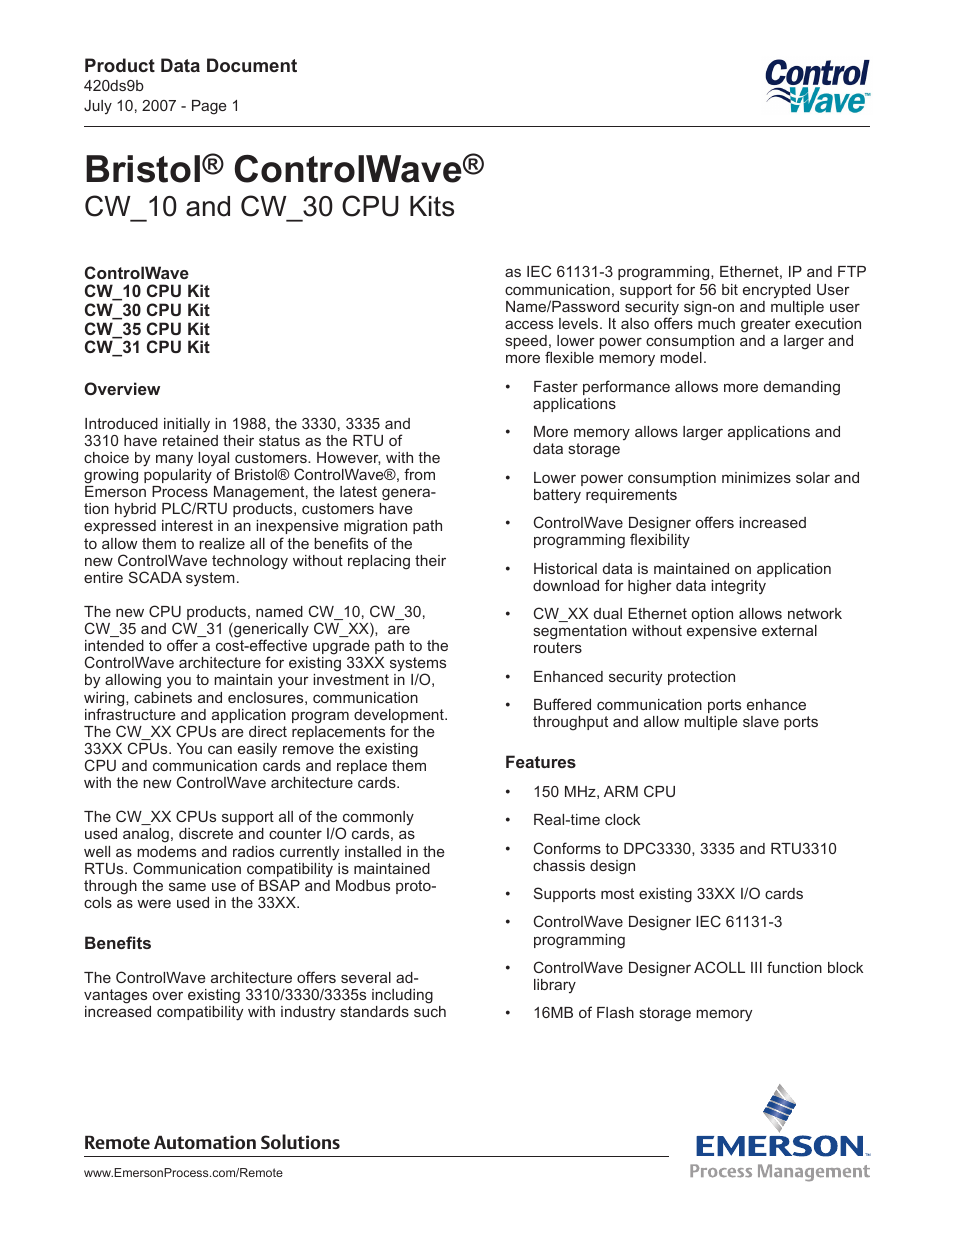 Bristol ControlWave LP